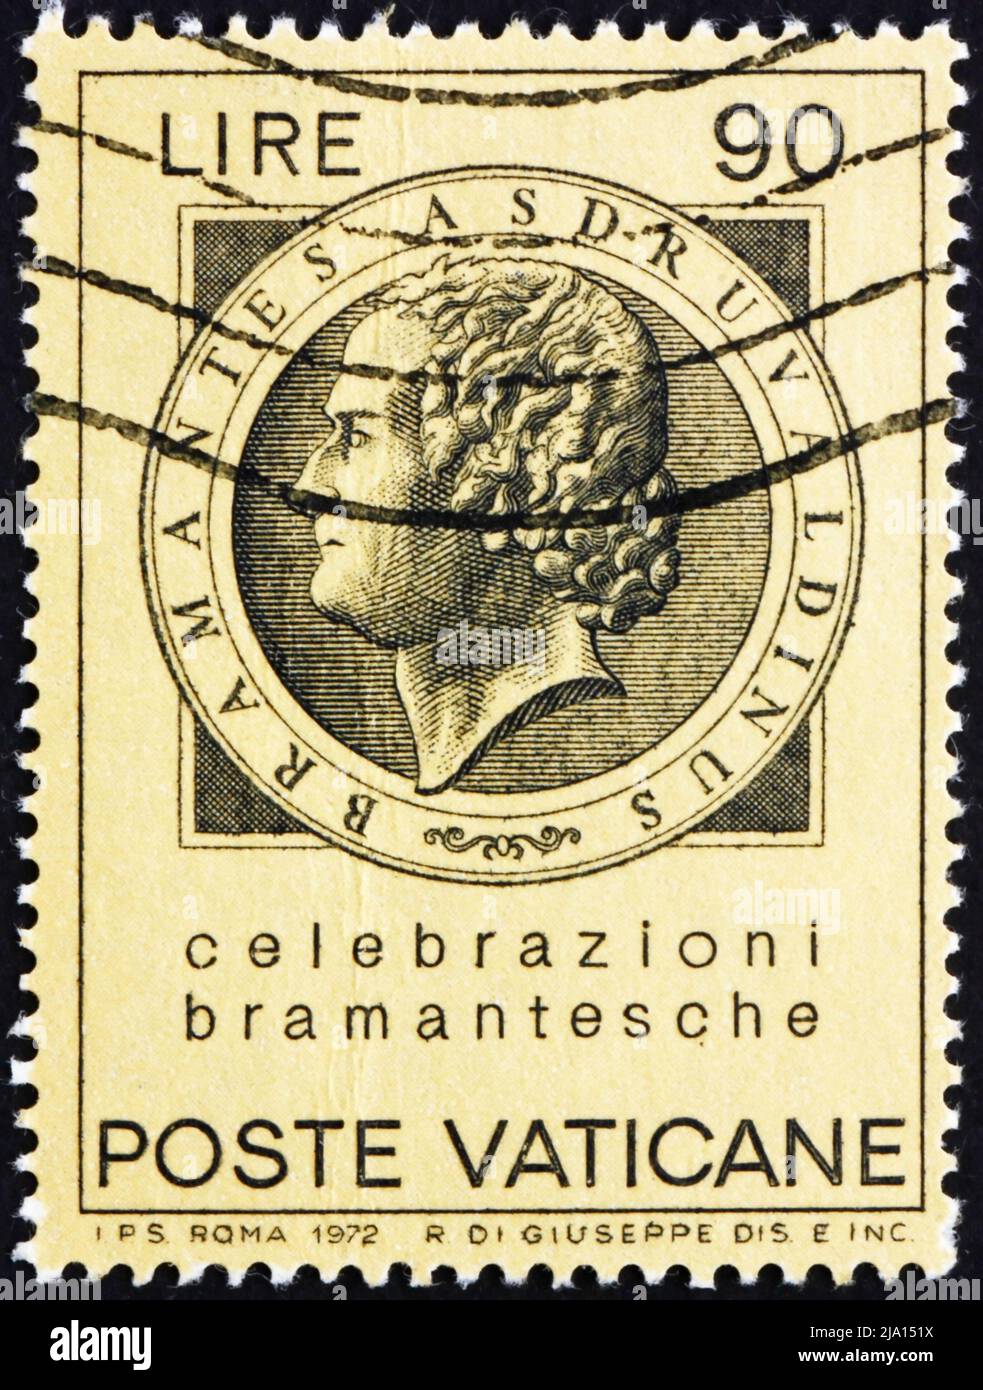 VATIKAN - UM 1972: Eine im Vatikan gedruckte Briefmarke zeigt Bramante, Donato d’Agnolo, Architekt, um 1972 Stockfoto